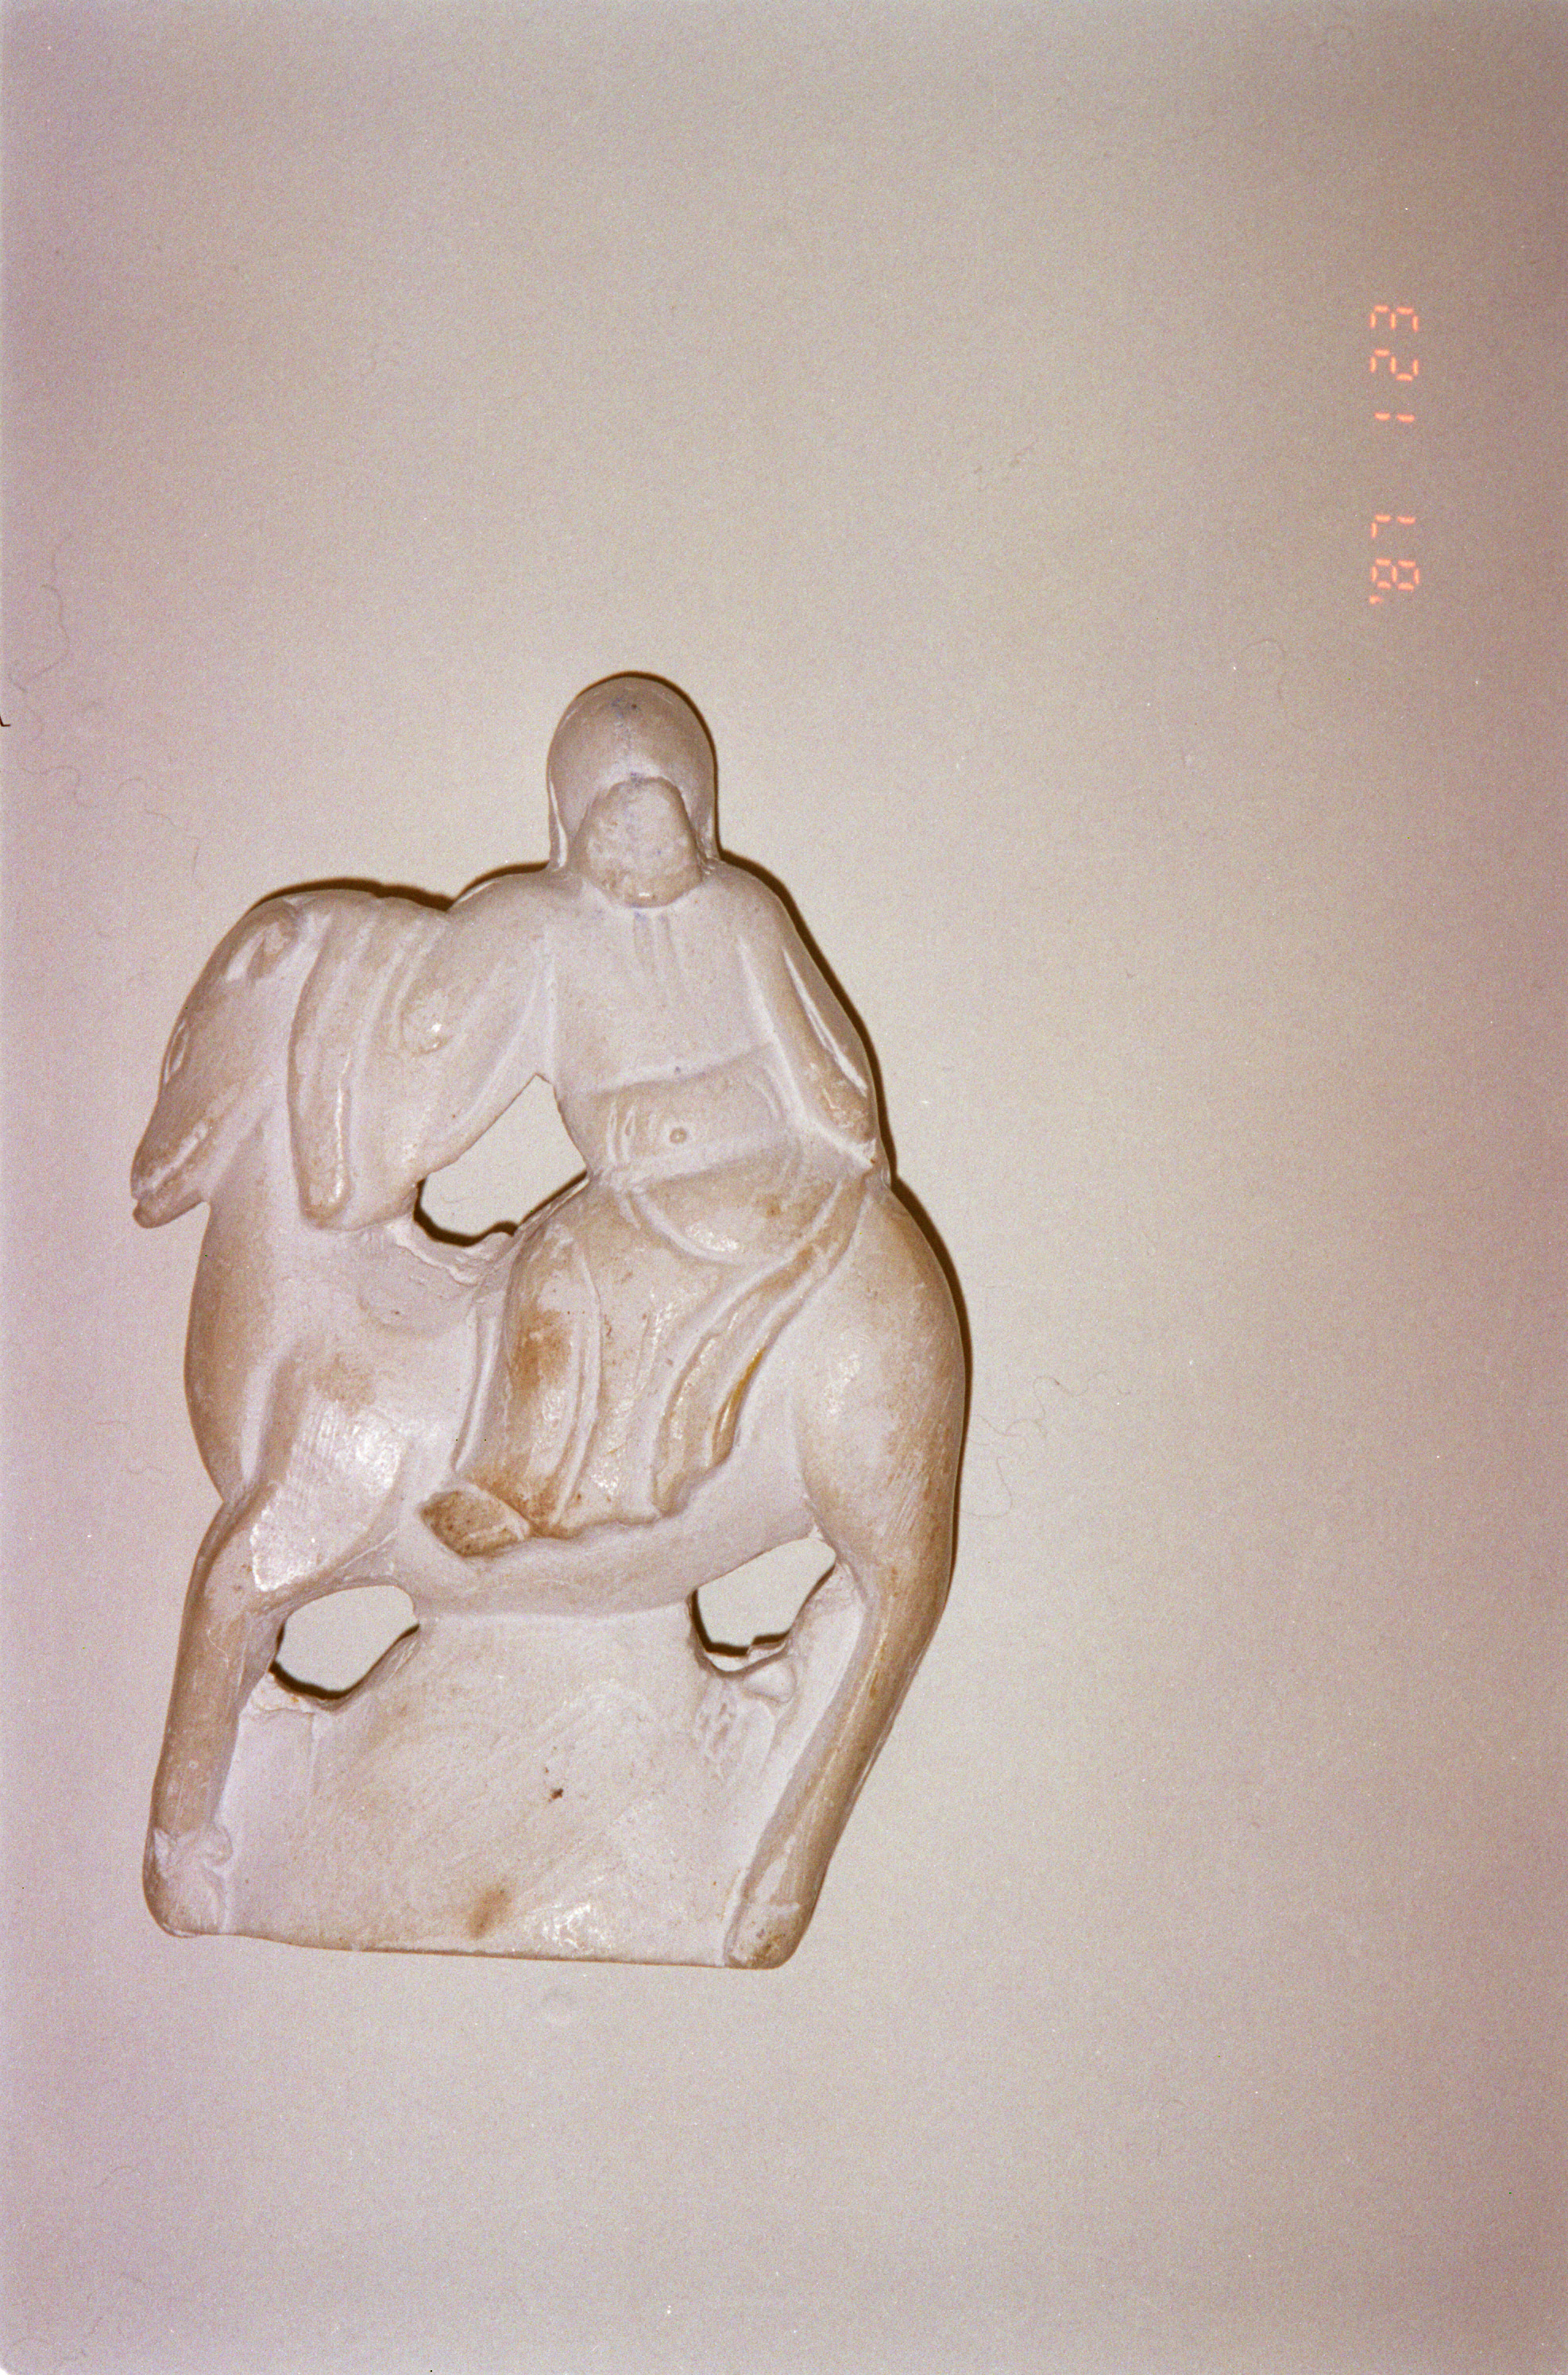 Plaster cast of 'Shou Lao' figure